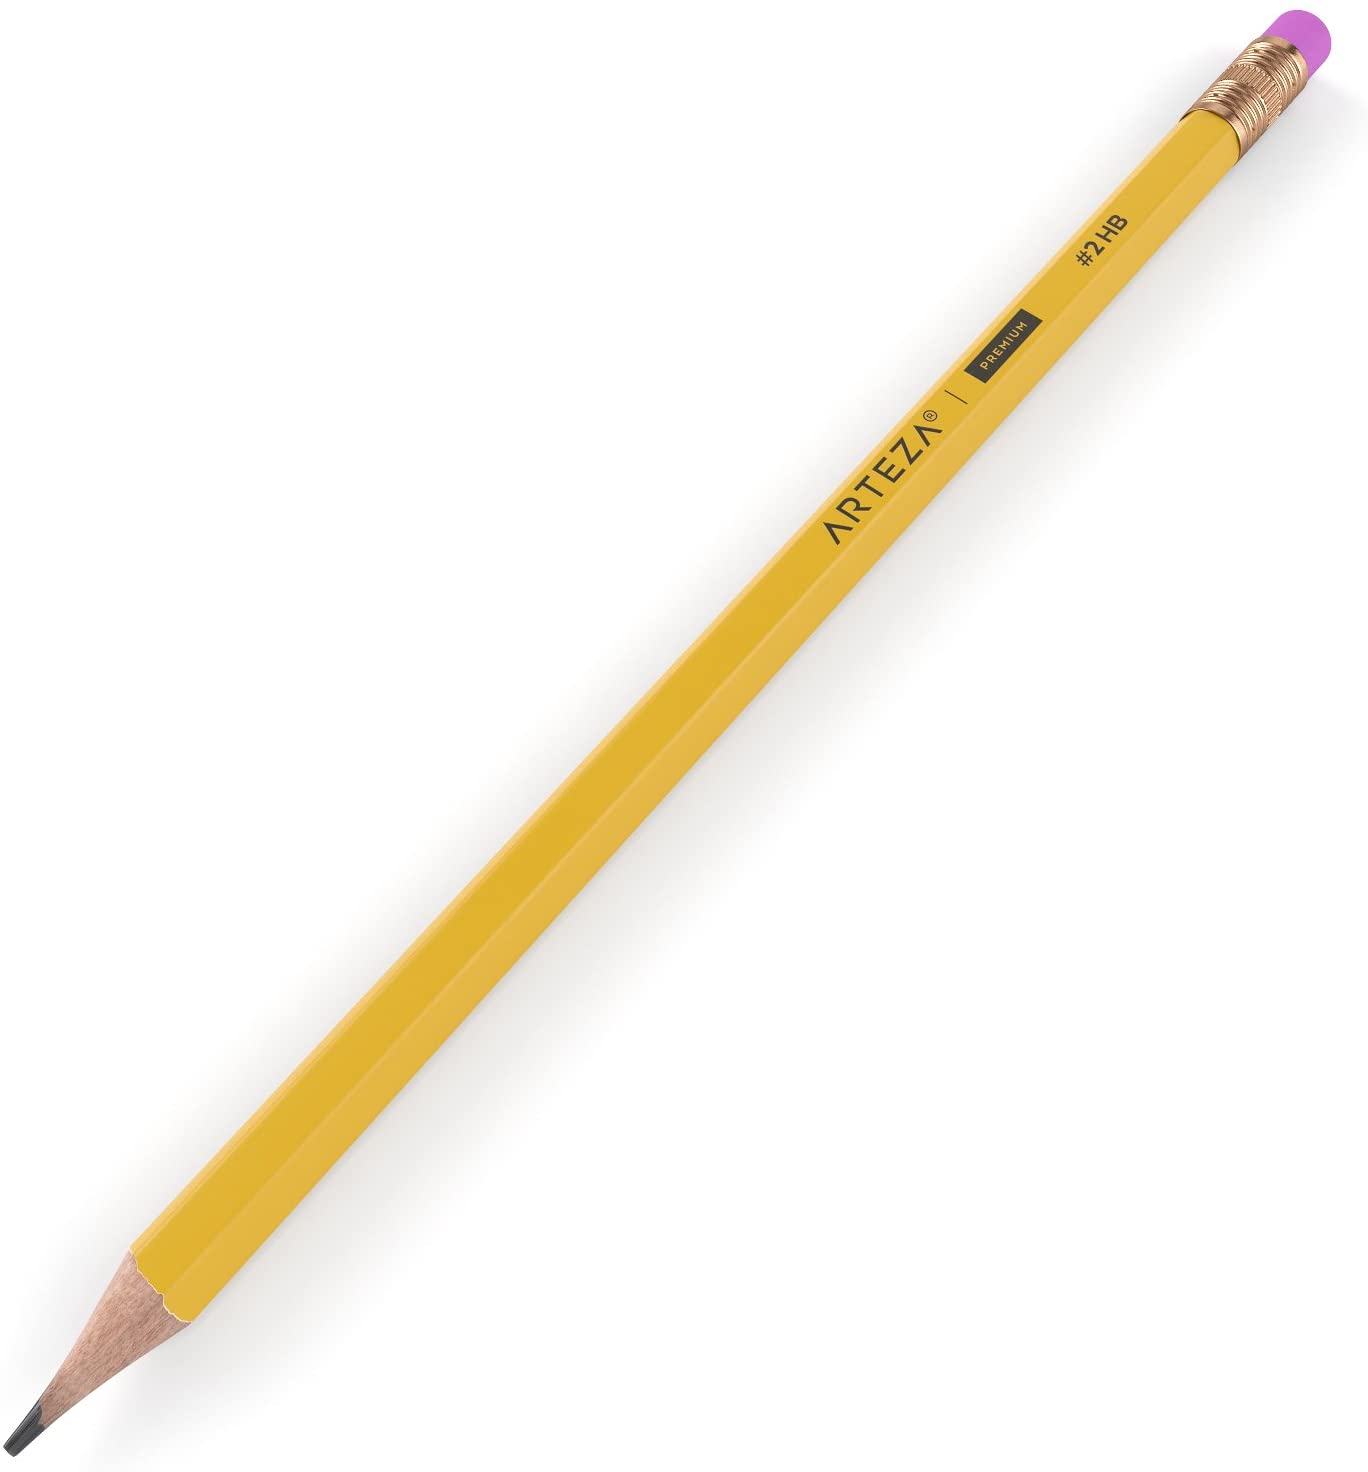 Premium #2 pencil